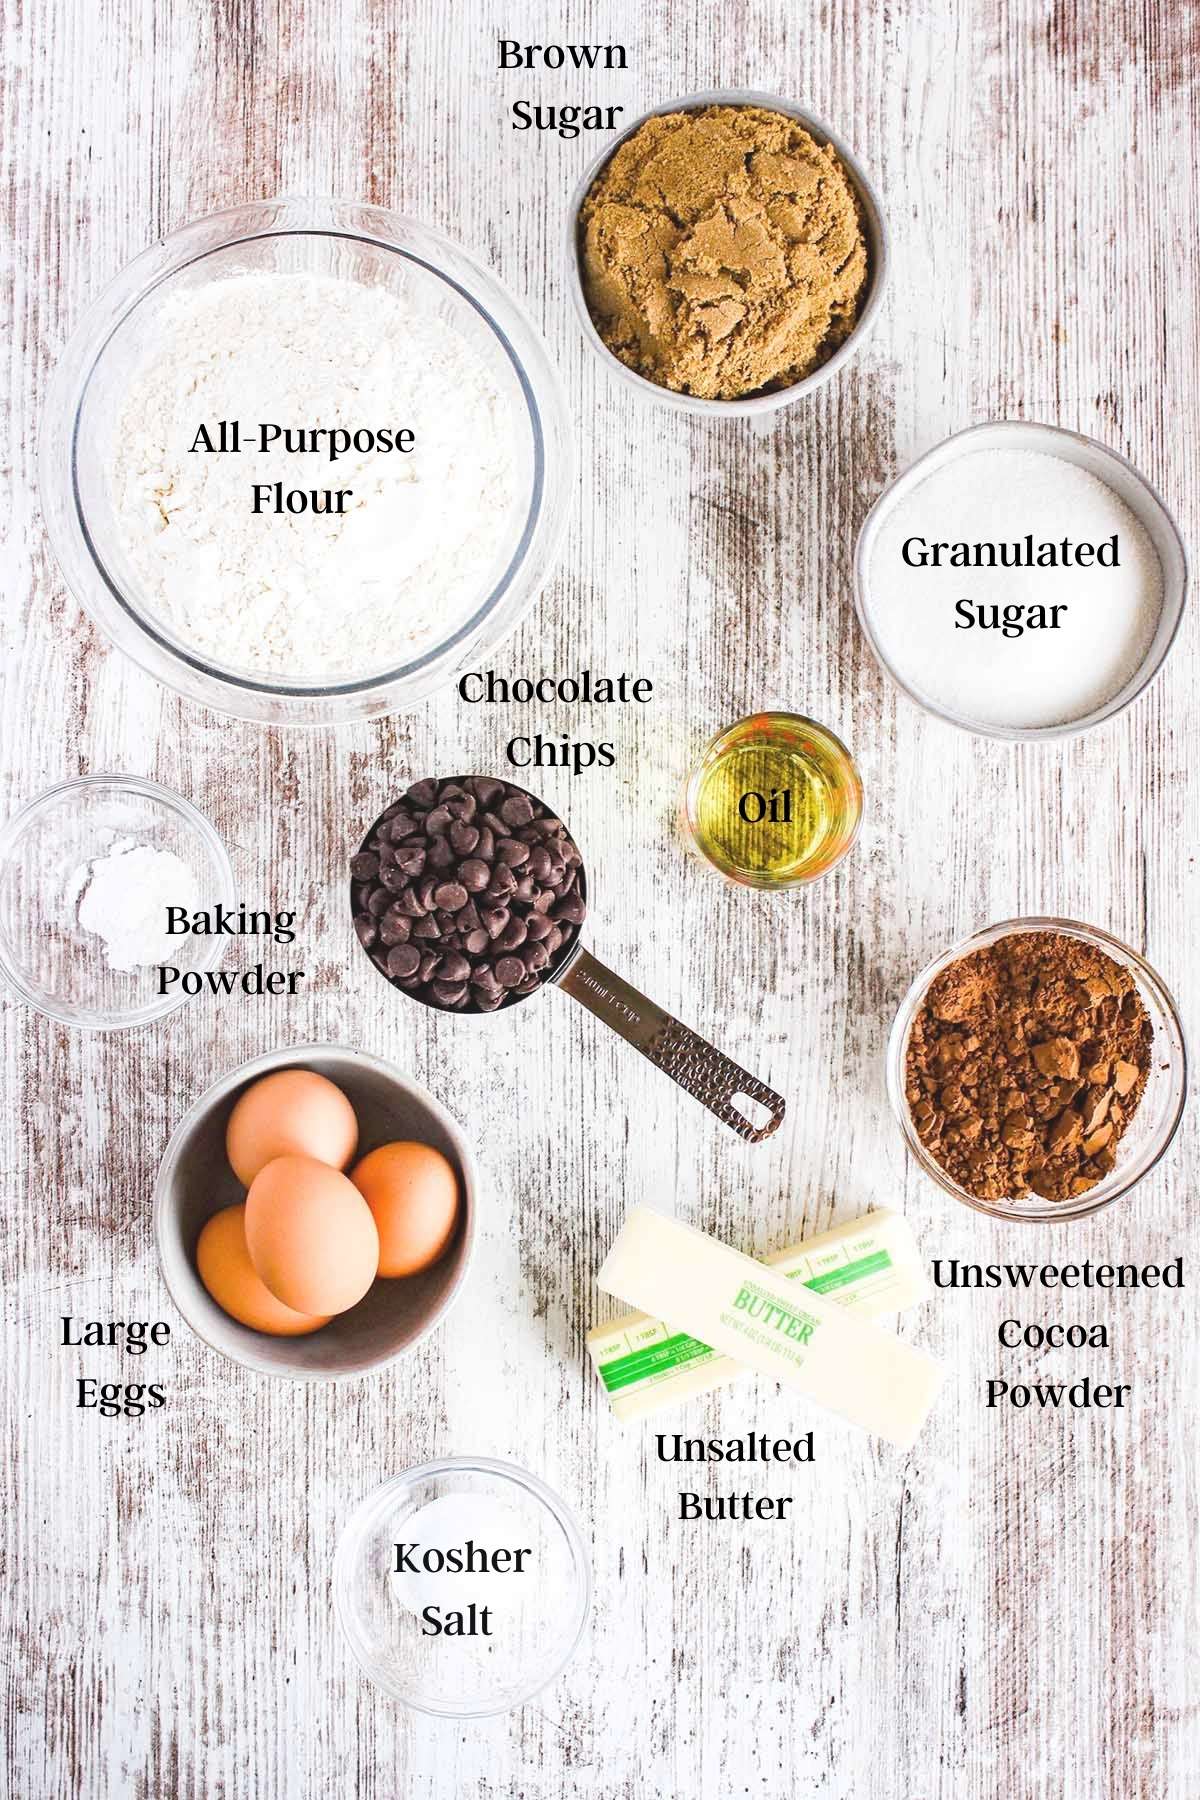 Ingredients for brookies (see recipe card).